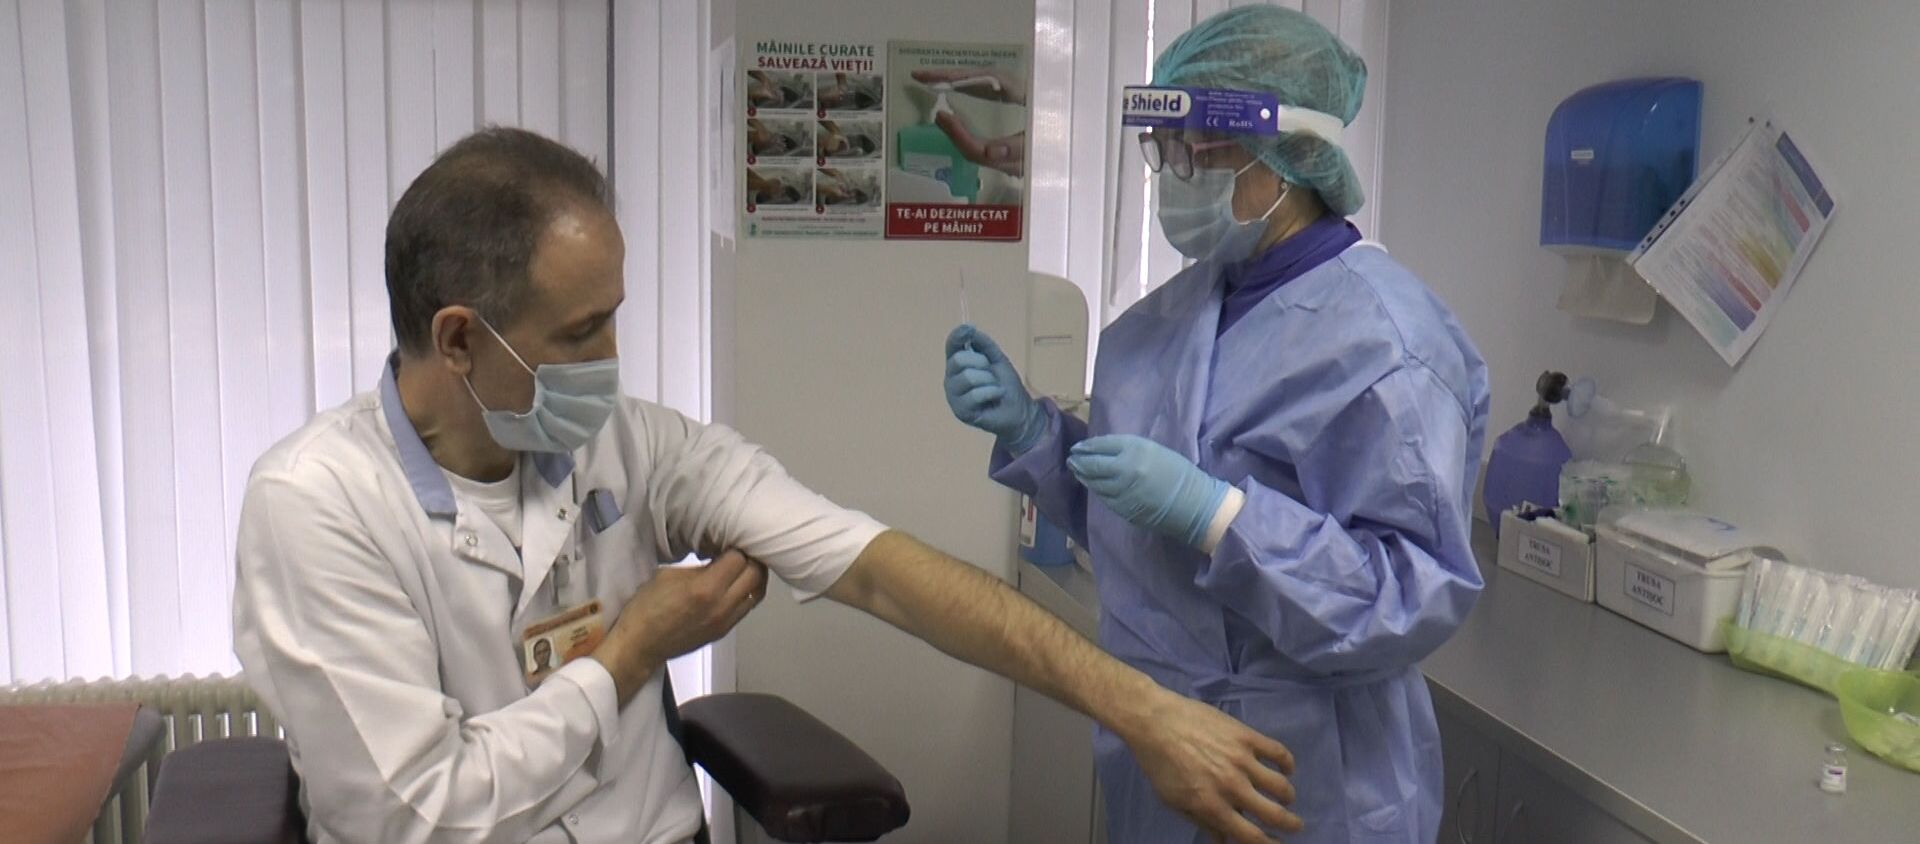 В Молдове началась вакцинация от COVID-19 - Sputnik Молдова, 1920, 02.03.2021